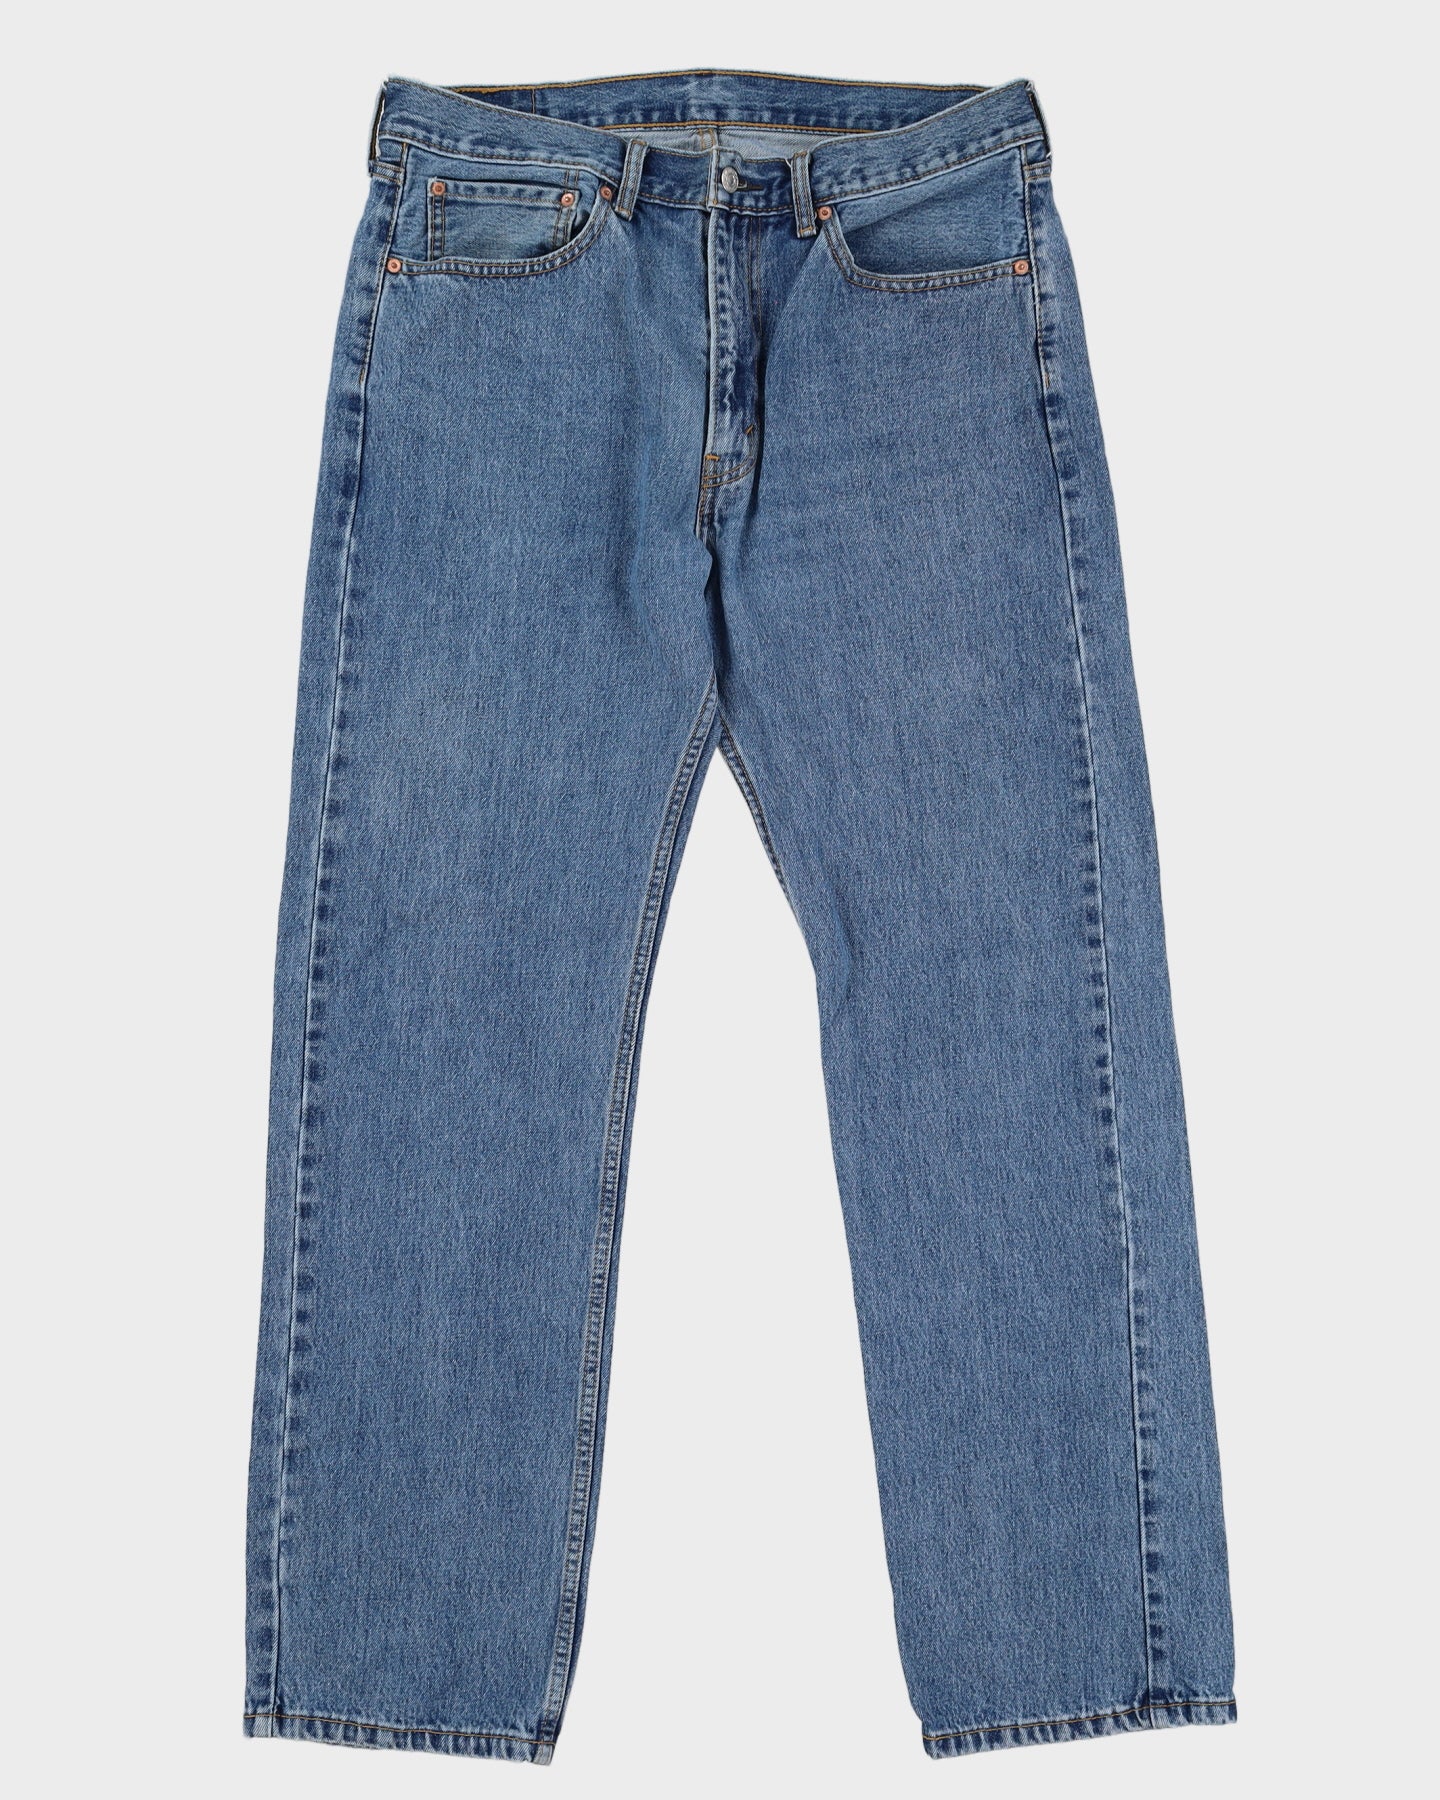 Levi's 505 Blue Jeans - W33 L36